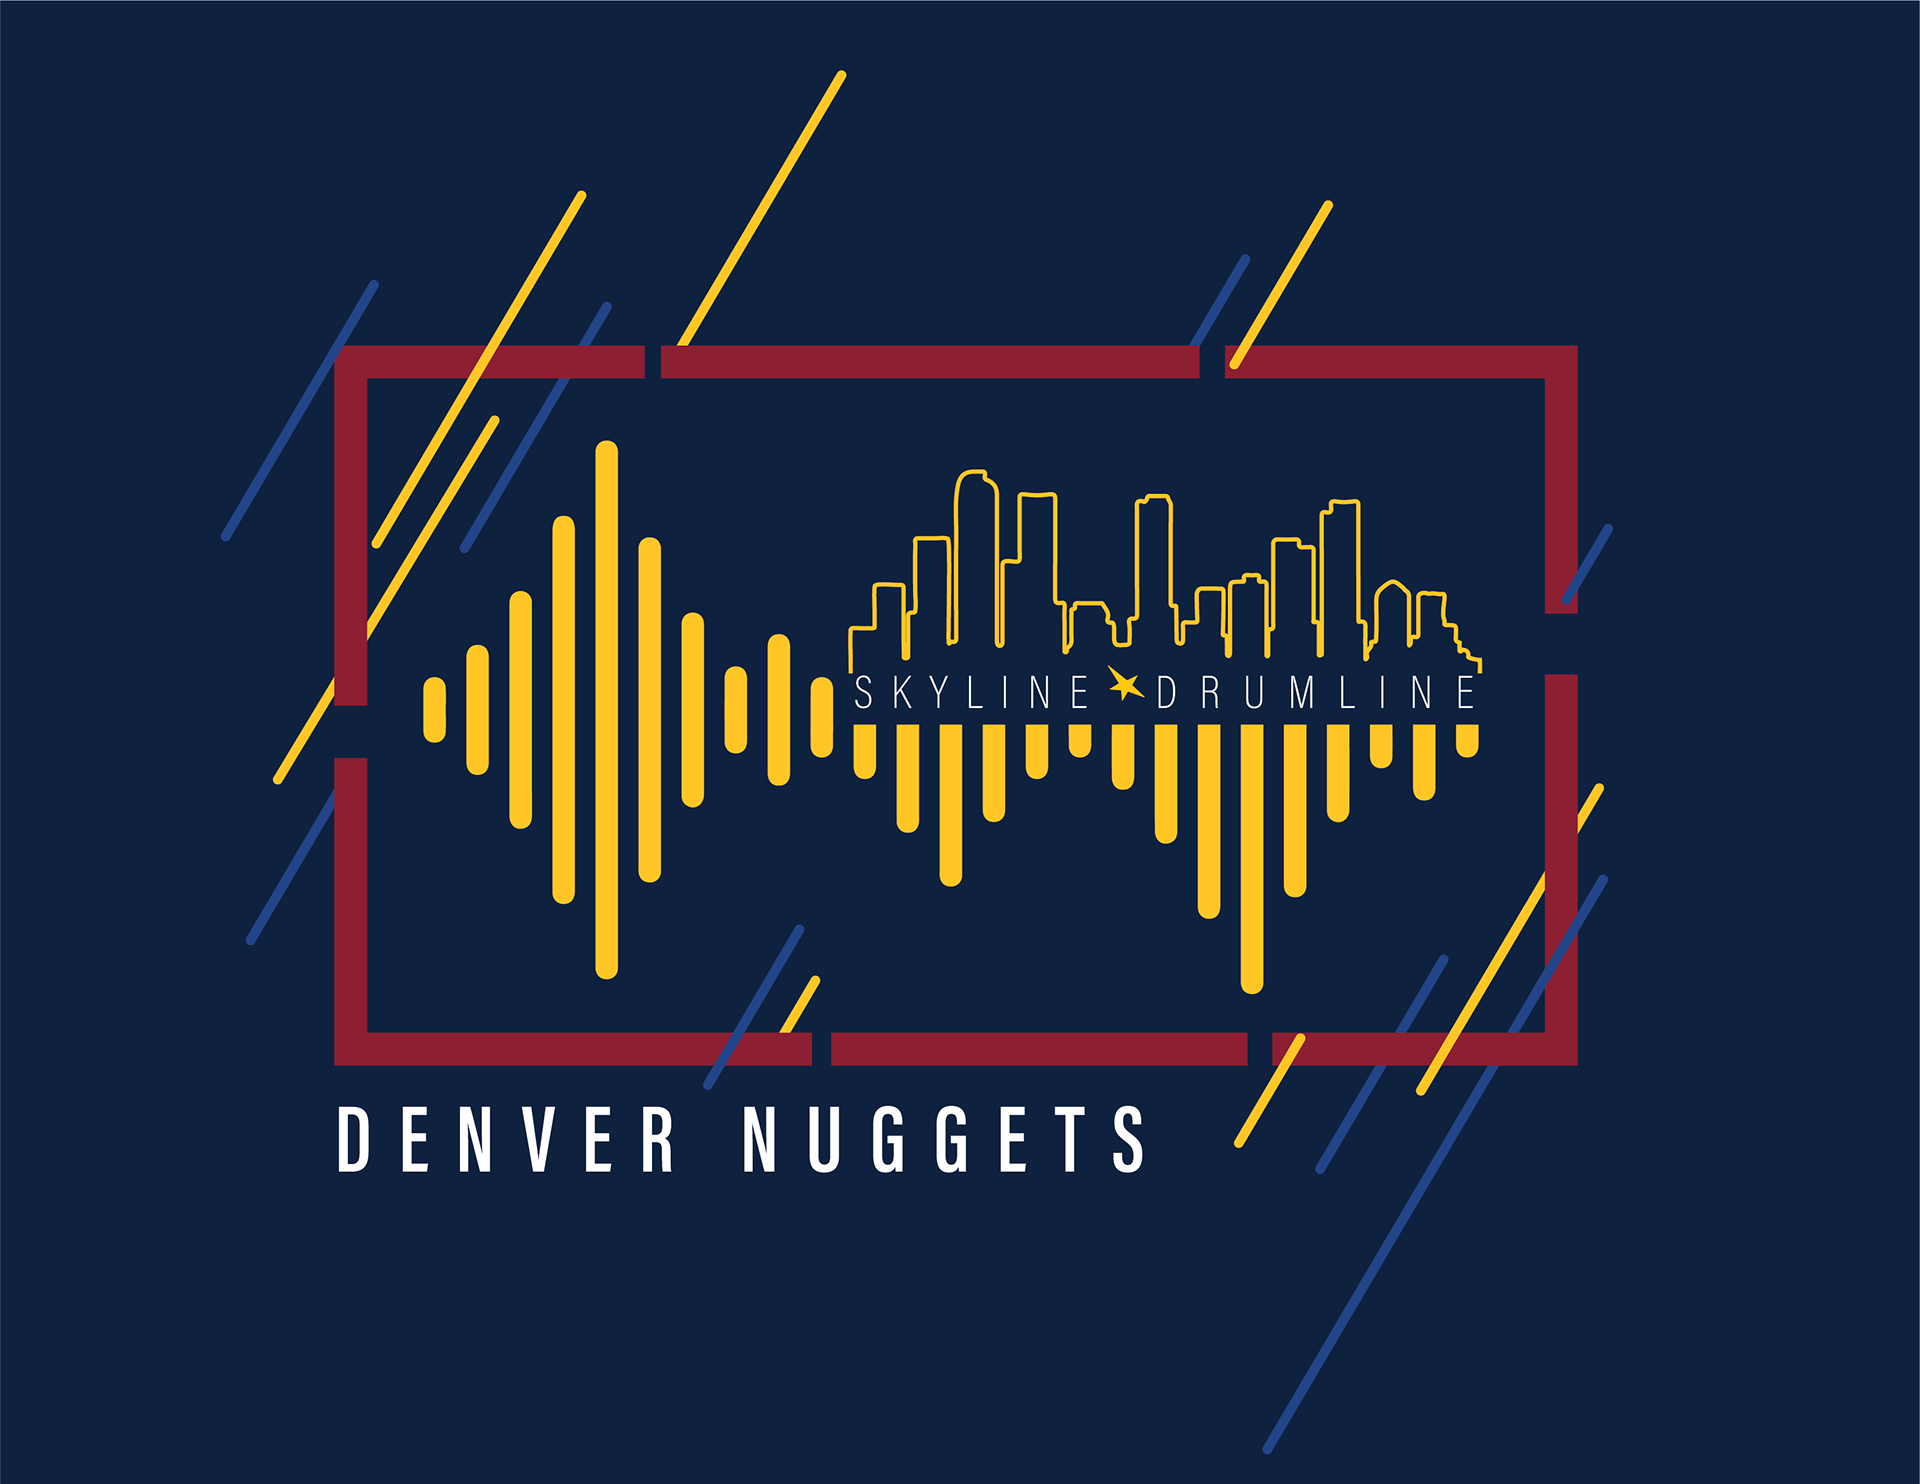 Denver Nuggets Skyline Drumline Shirt